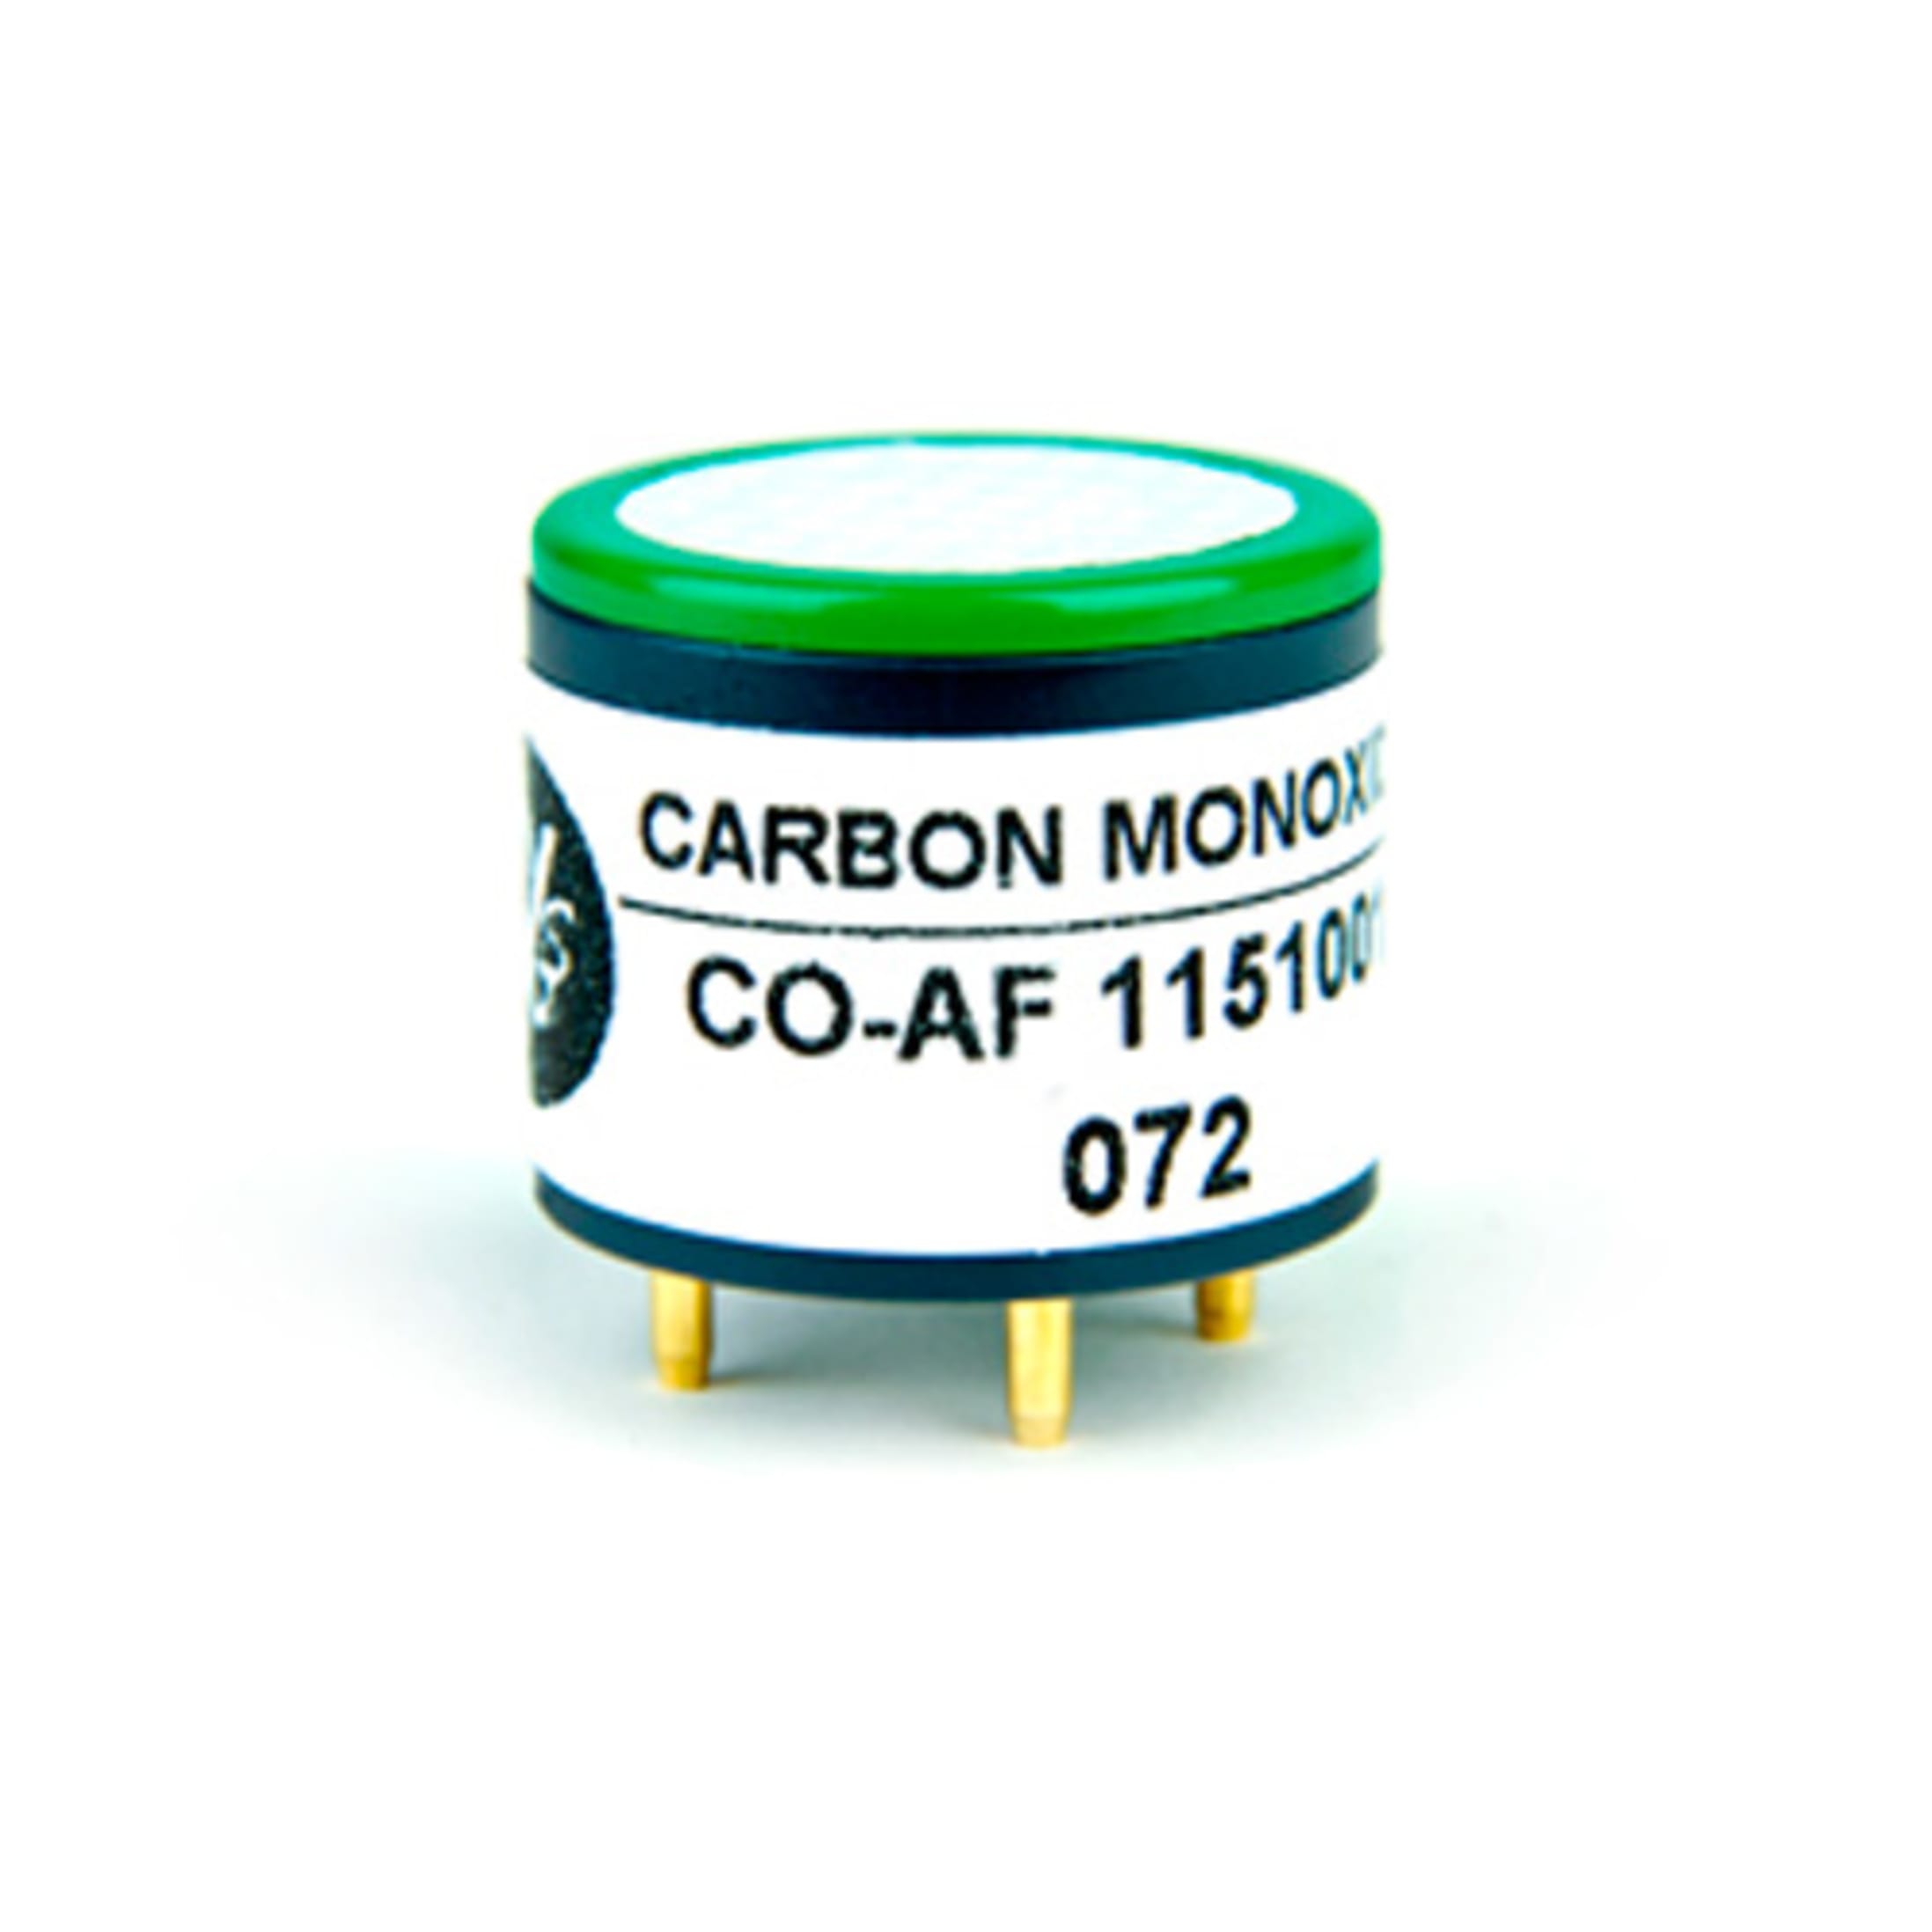 Carbon Monoxide Gas Sensor by Alphasense